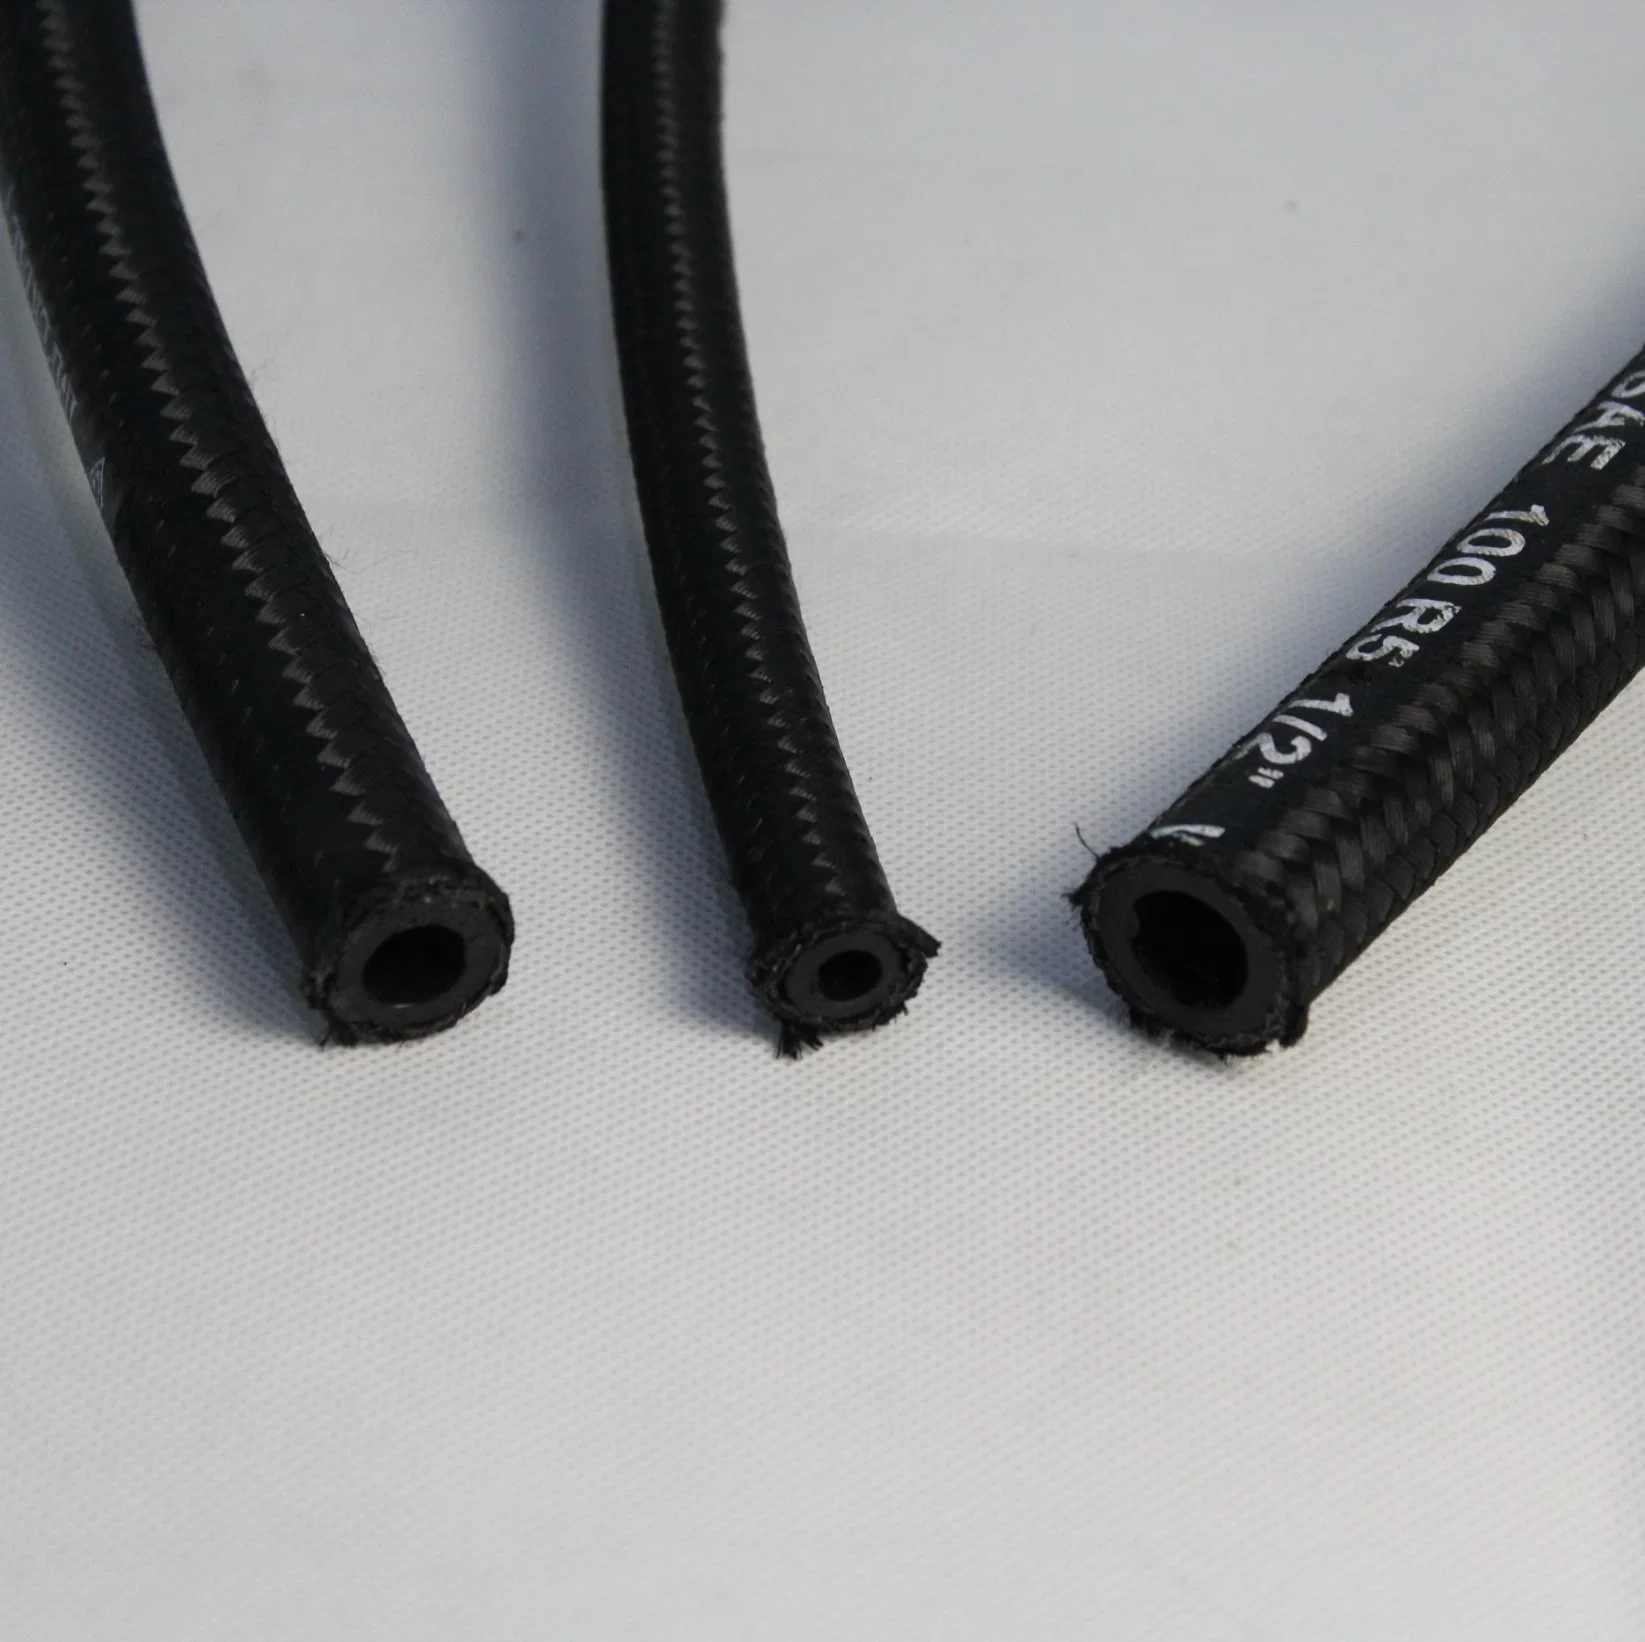 SAE 100R5 con&#160;un único cable trenzado manguera de caucho hidráulico cubierto de tela